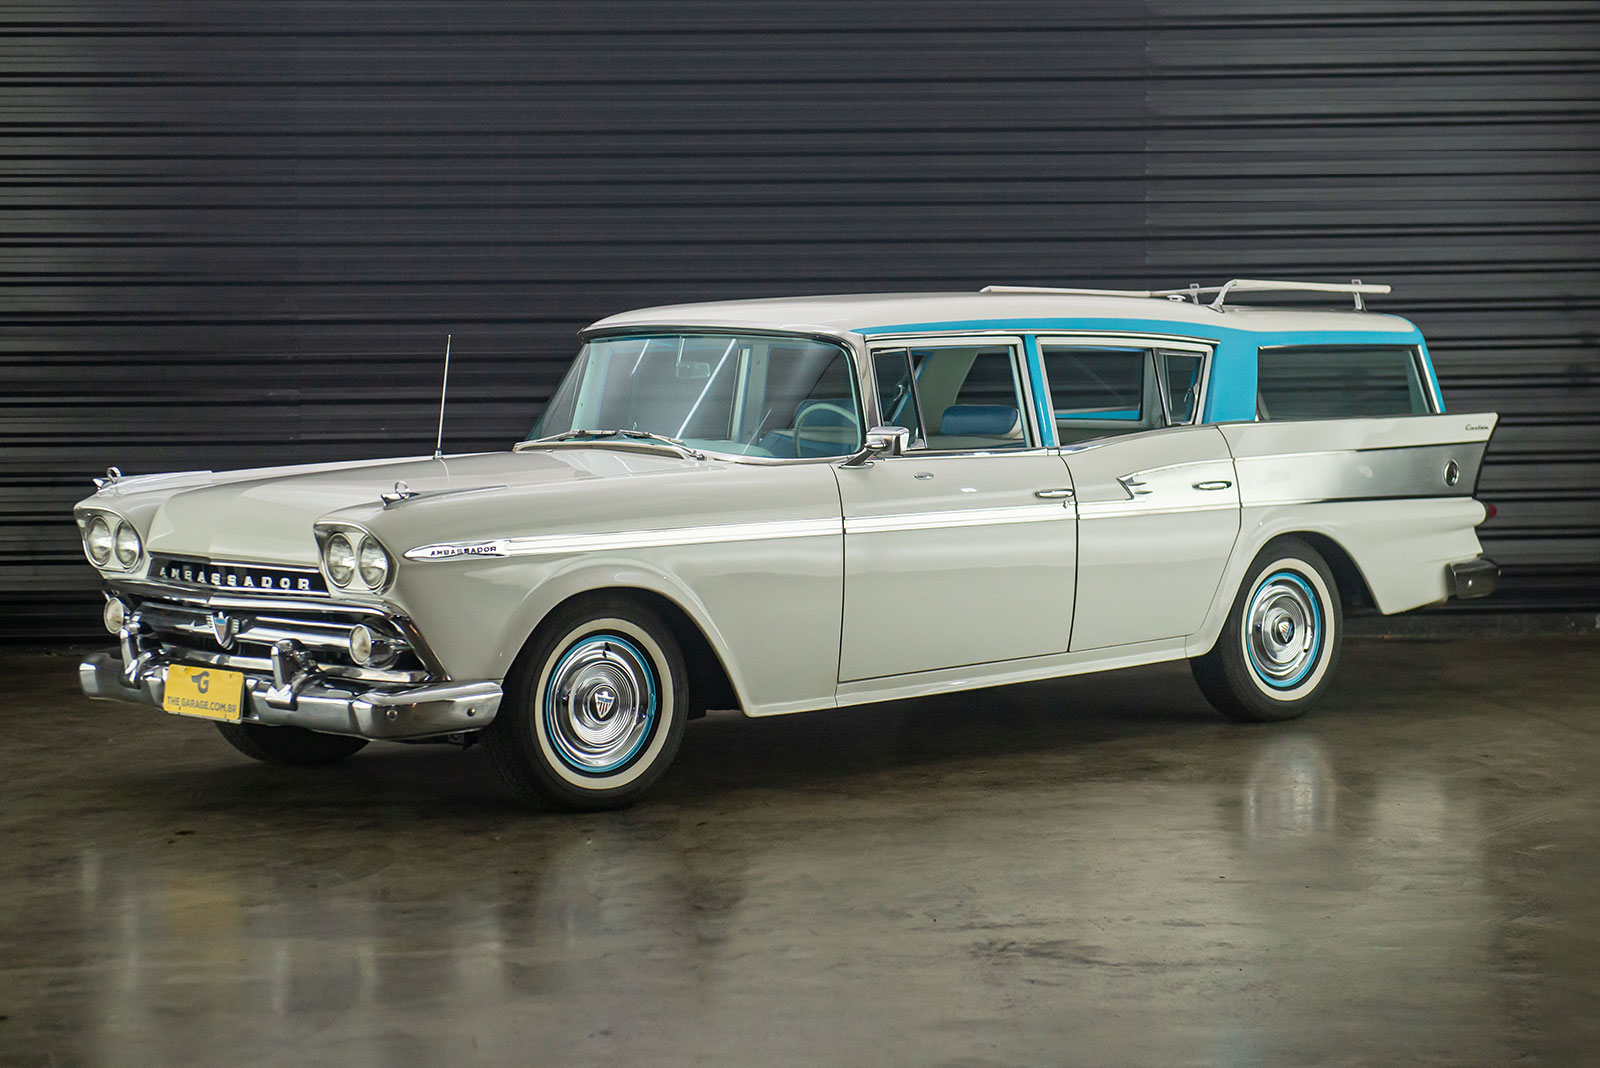 1959-AMC-Rambler-Ambassador-perua-venda-sao-paulo-sp-for-sale-the-garage-classicos-a-carros-antigos